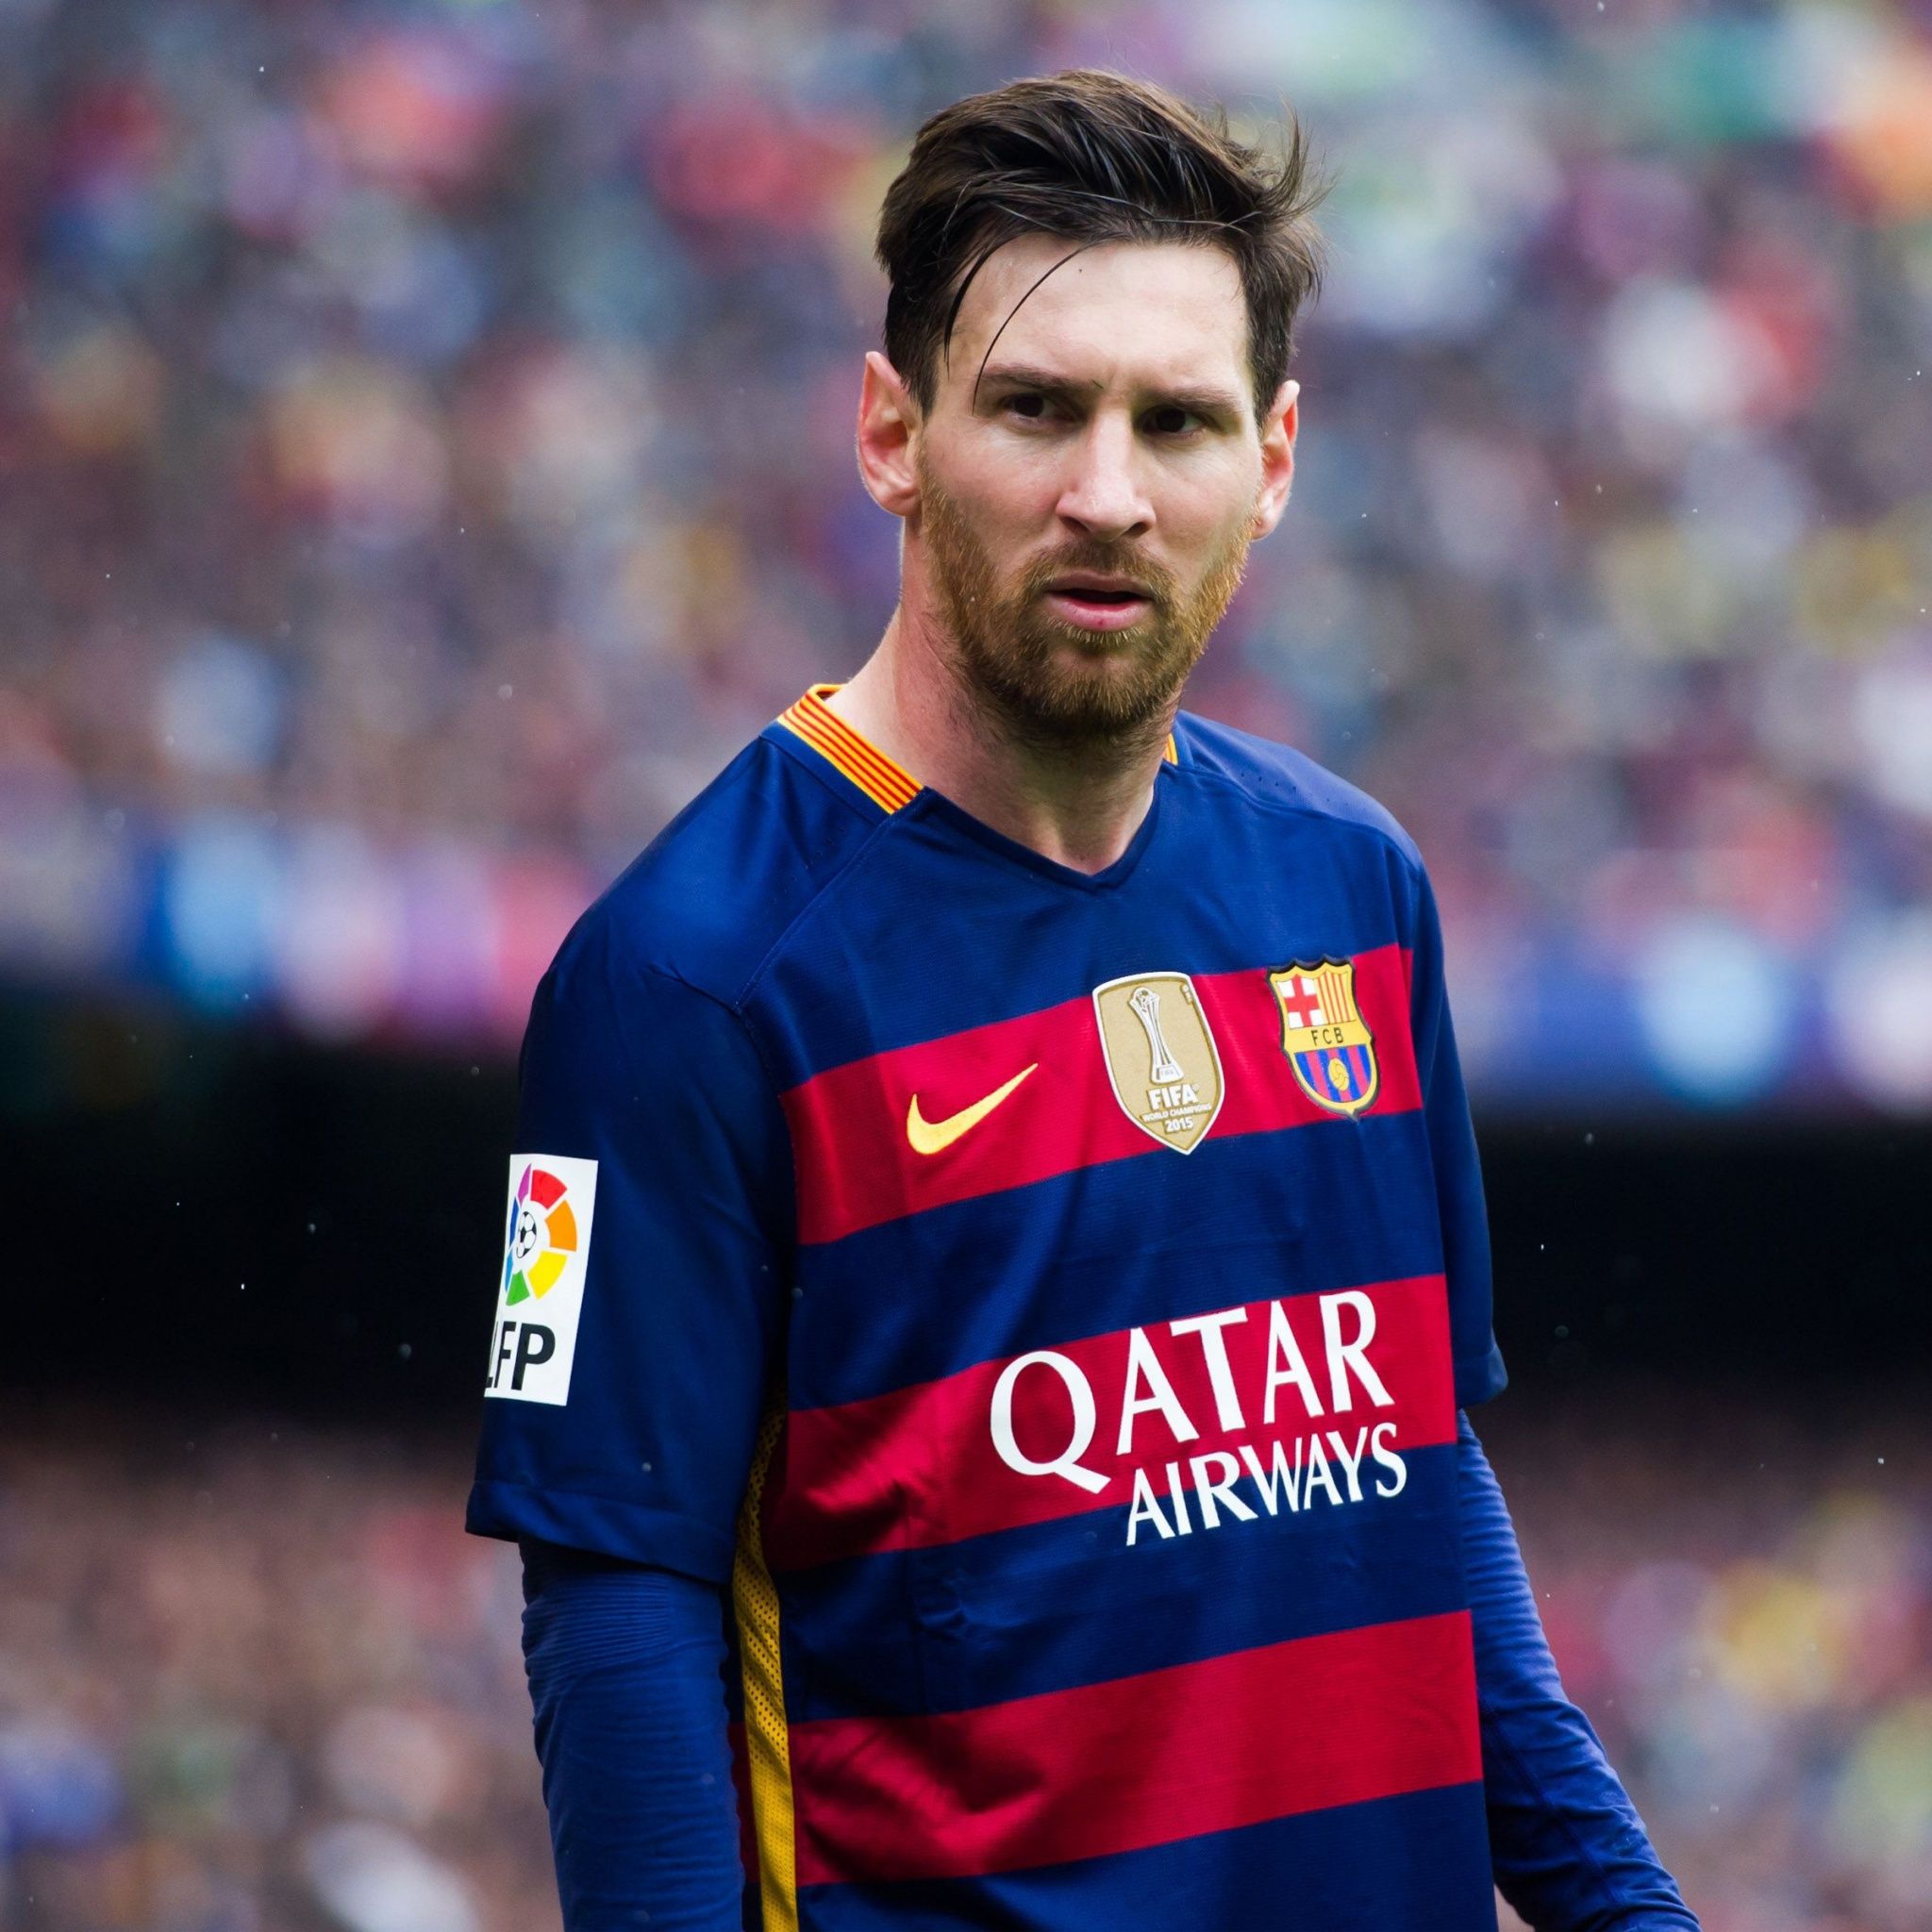  Messi Hintergrundbild 2048x2048. Lionel Messi Wallpaper 4K, Football player, Sports